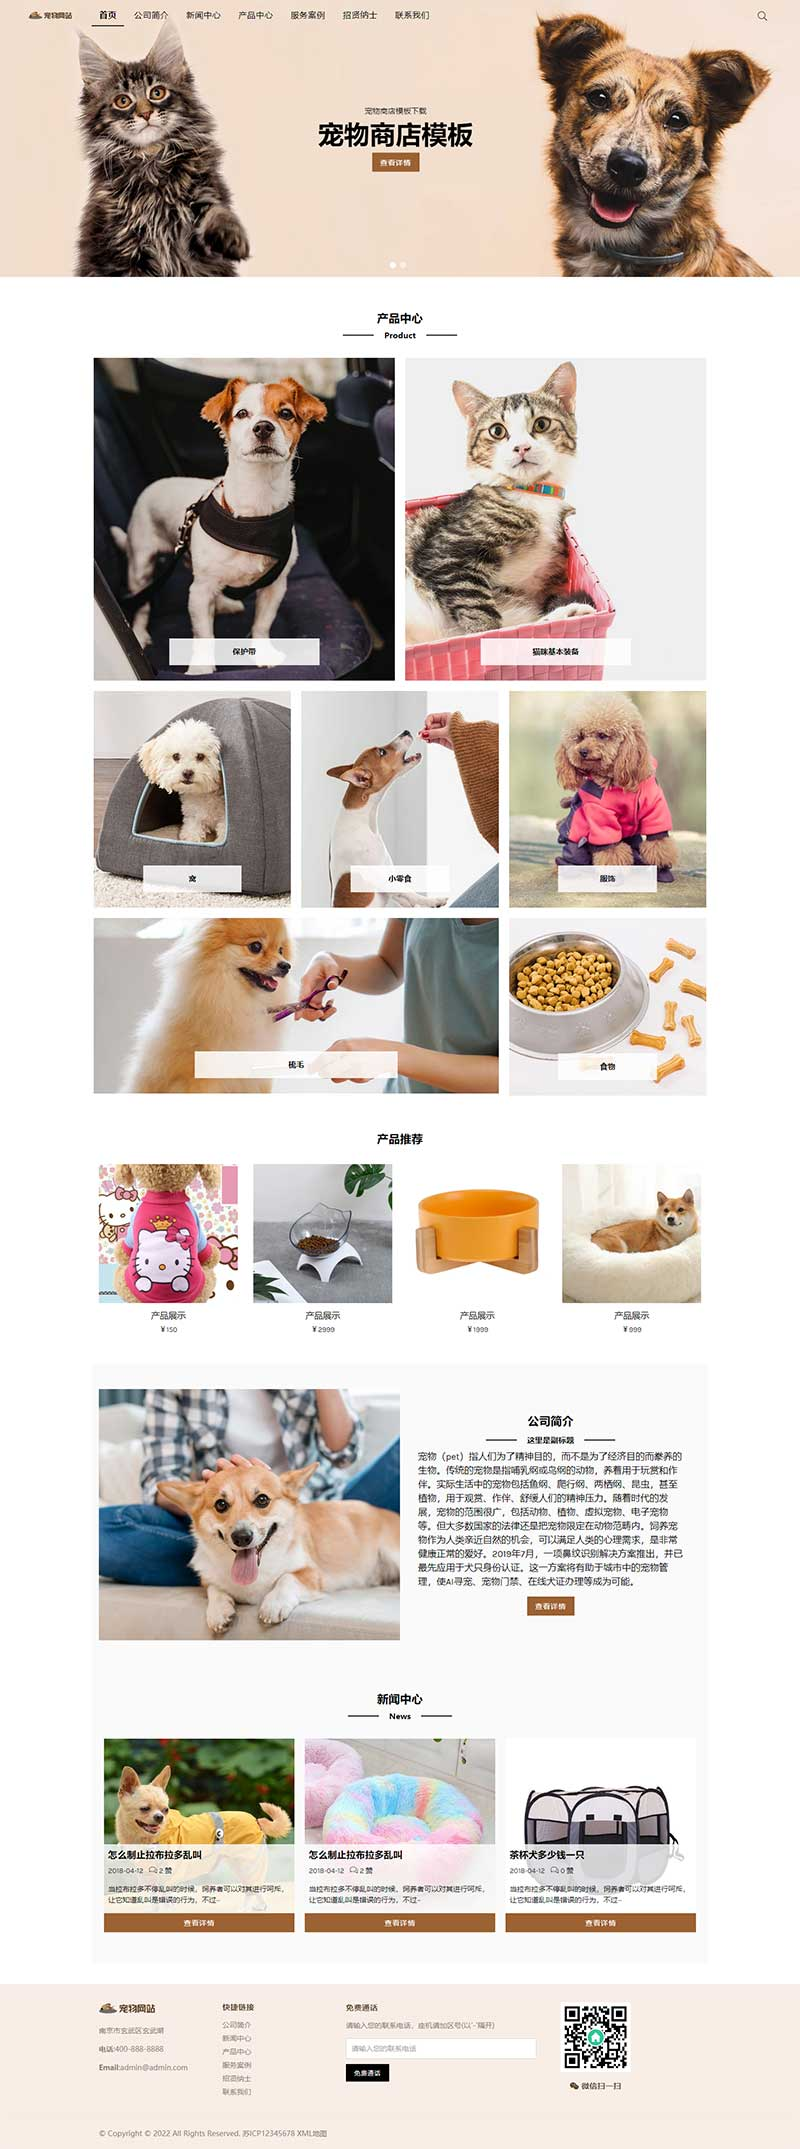 宠物商店宠物装备类网站pbootcms模板插图源码资源库